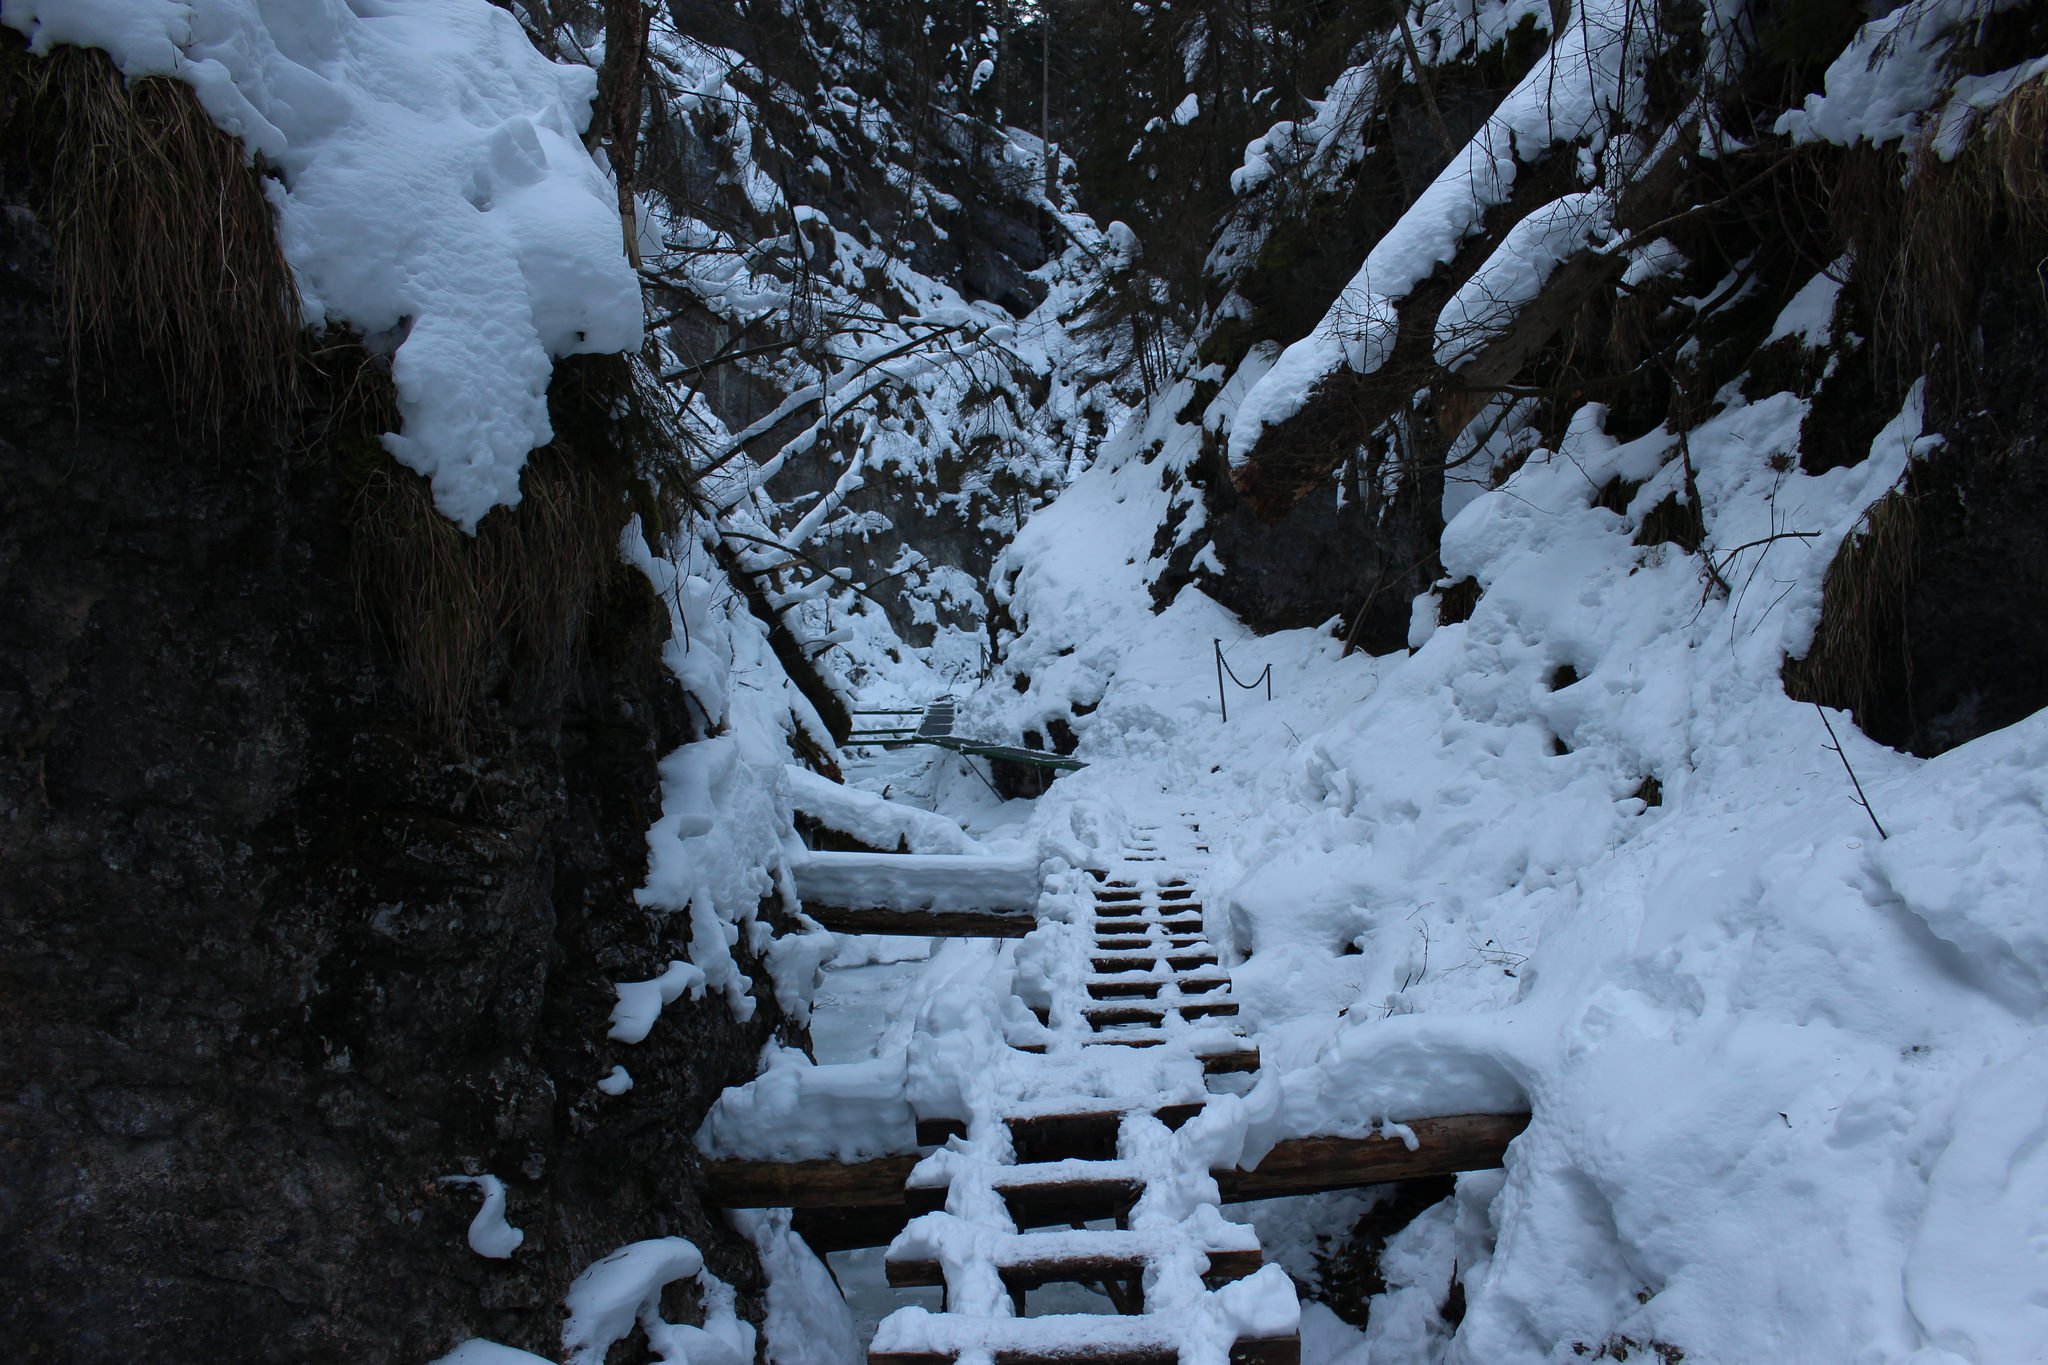 Suchá Belá gorge, winter hiking trip, Košice region, Slovakia – 6